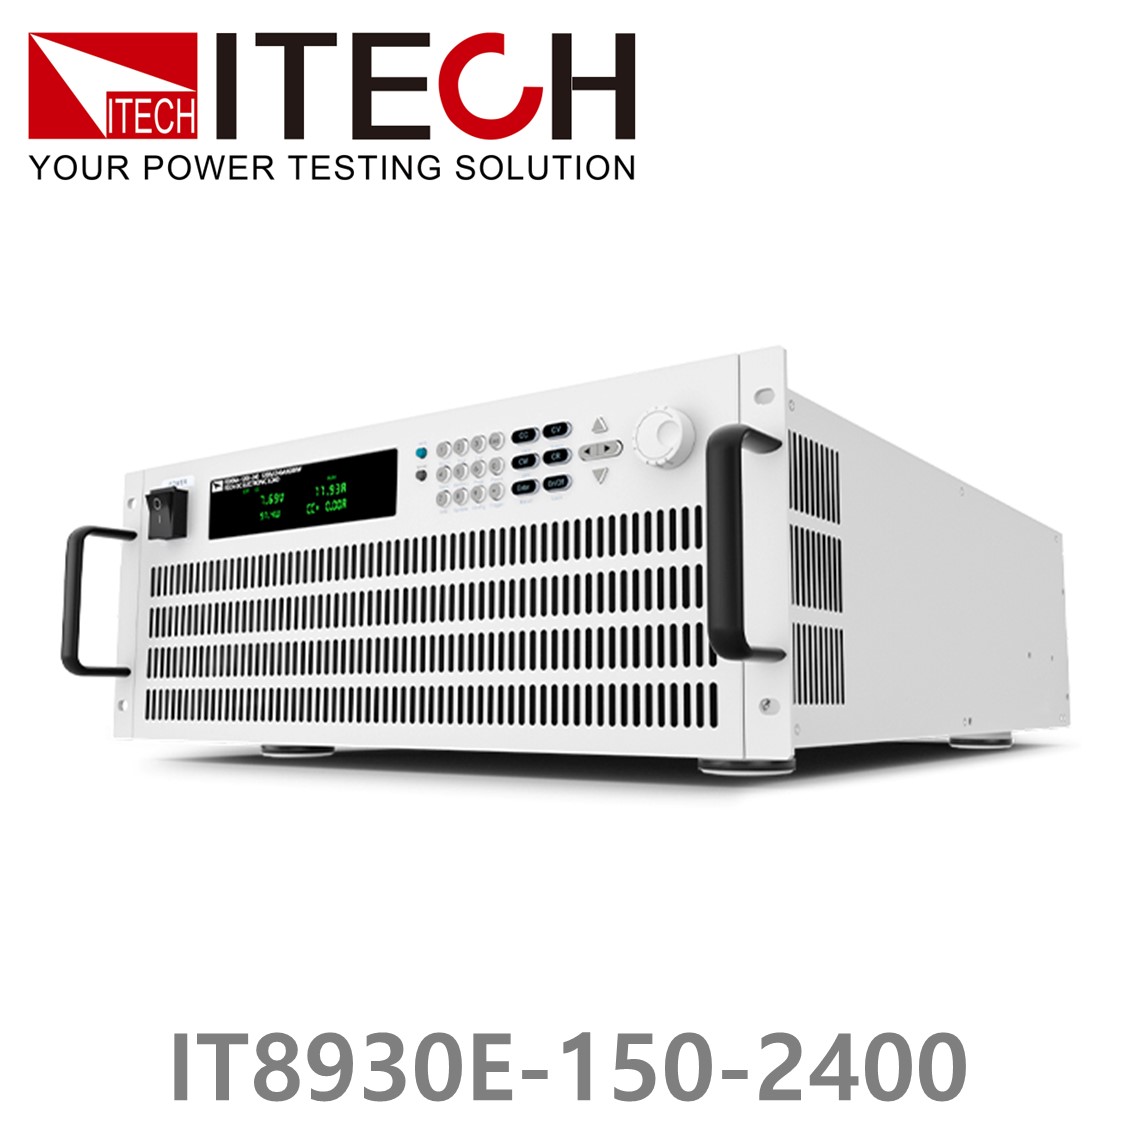 [ ITECH ] IT8930E-150-2400  고성능 고전력 DC 전자로드 150V/2400A/30kW (27U)